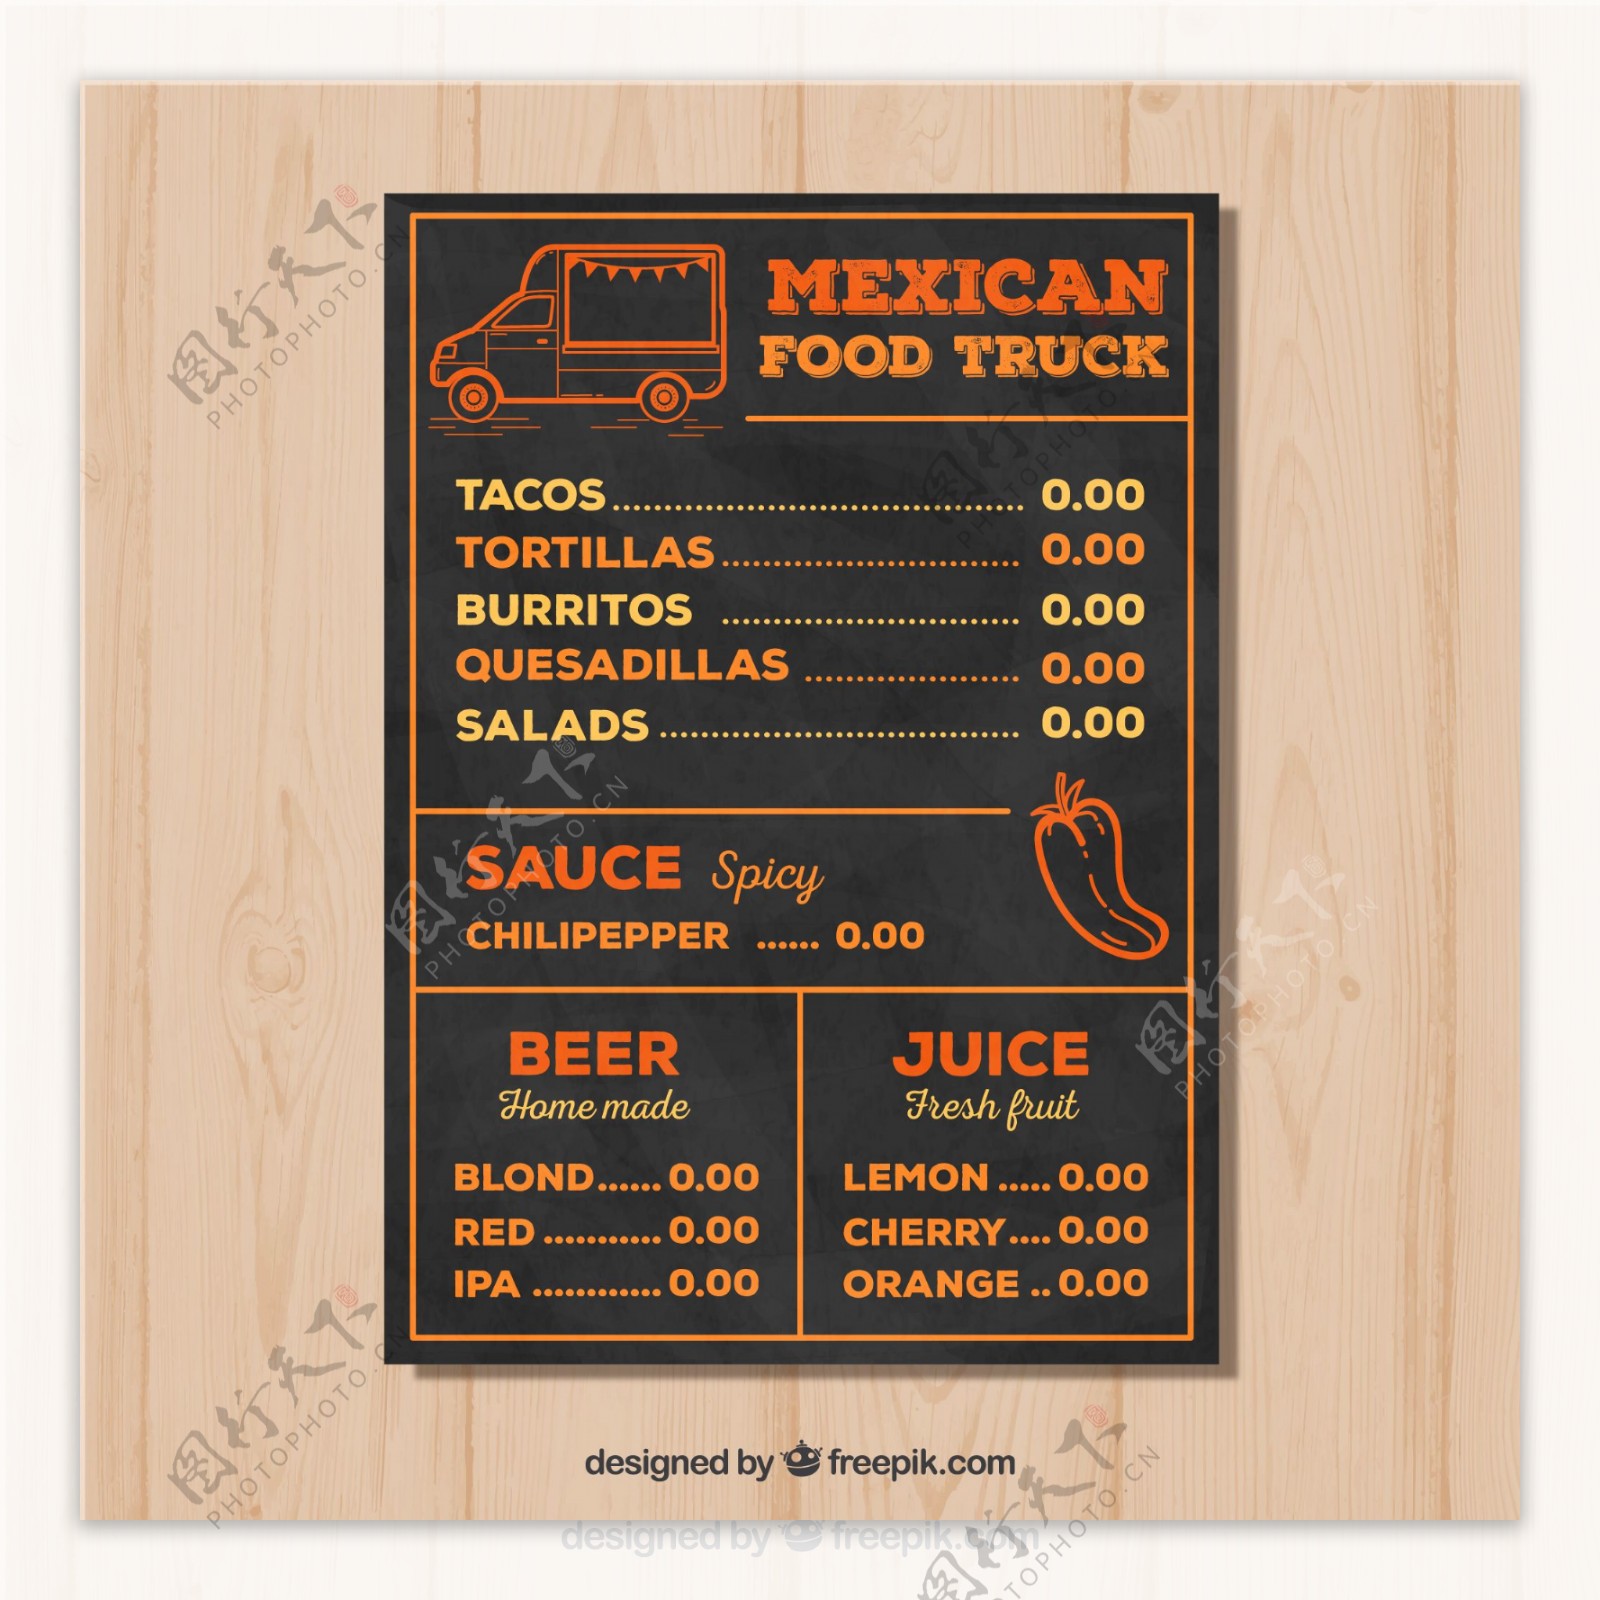 手绘墨西哥食品卡车菜单